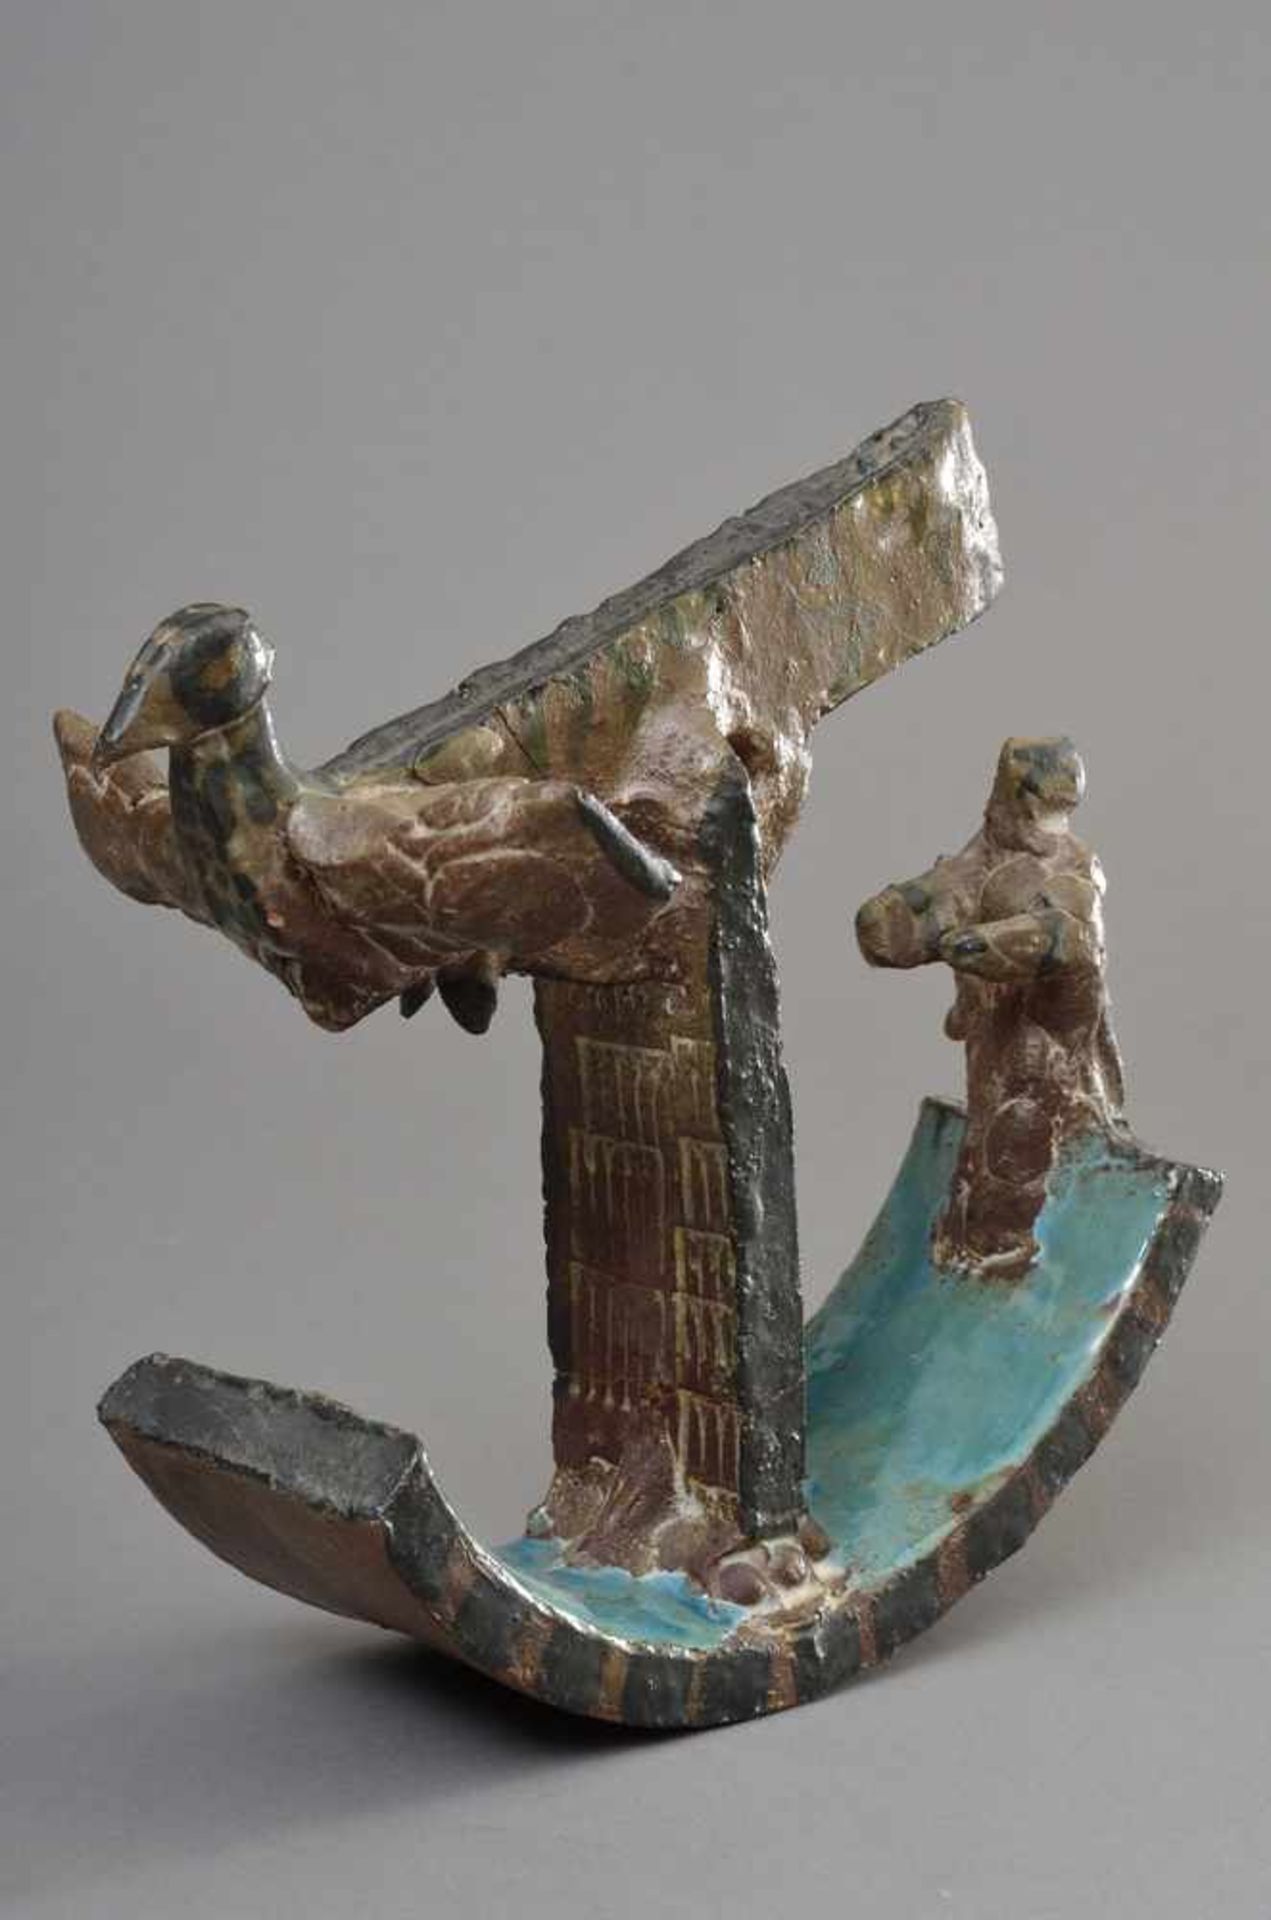 Portanier, Gilbert (*1926) "Vogel-Schiff", farbig glasierte Keramik Skulptur, H. 21cm, rest. - Bild 4 aus 4